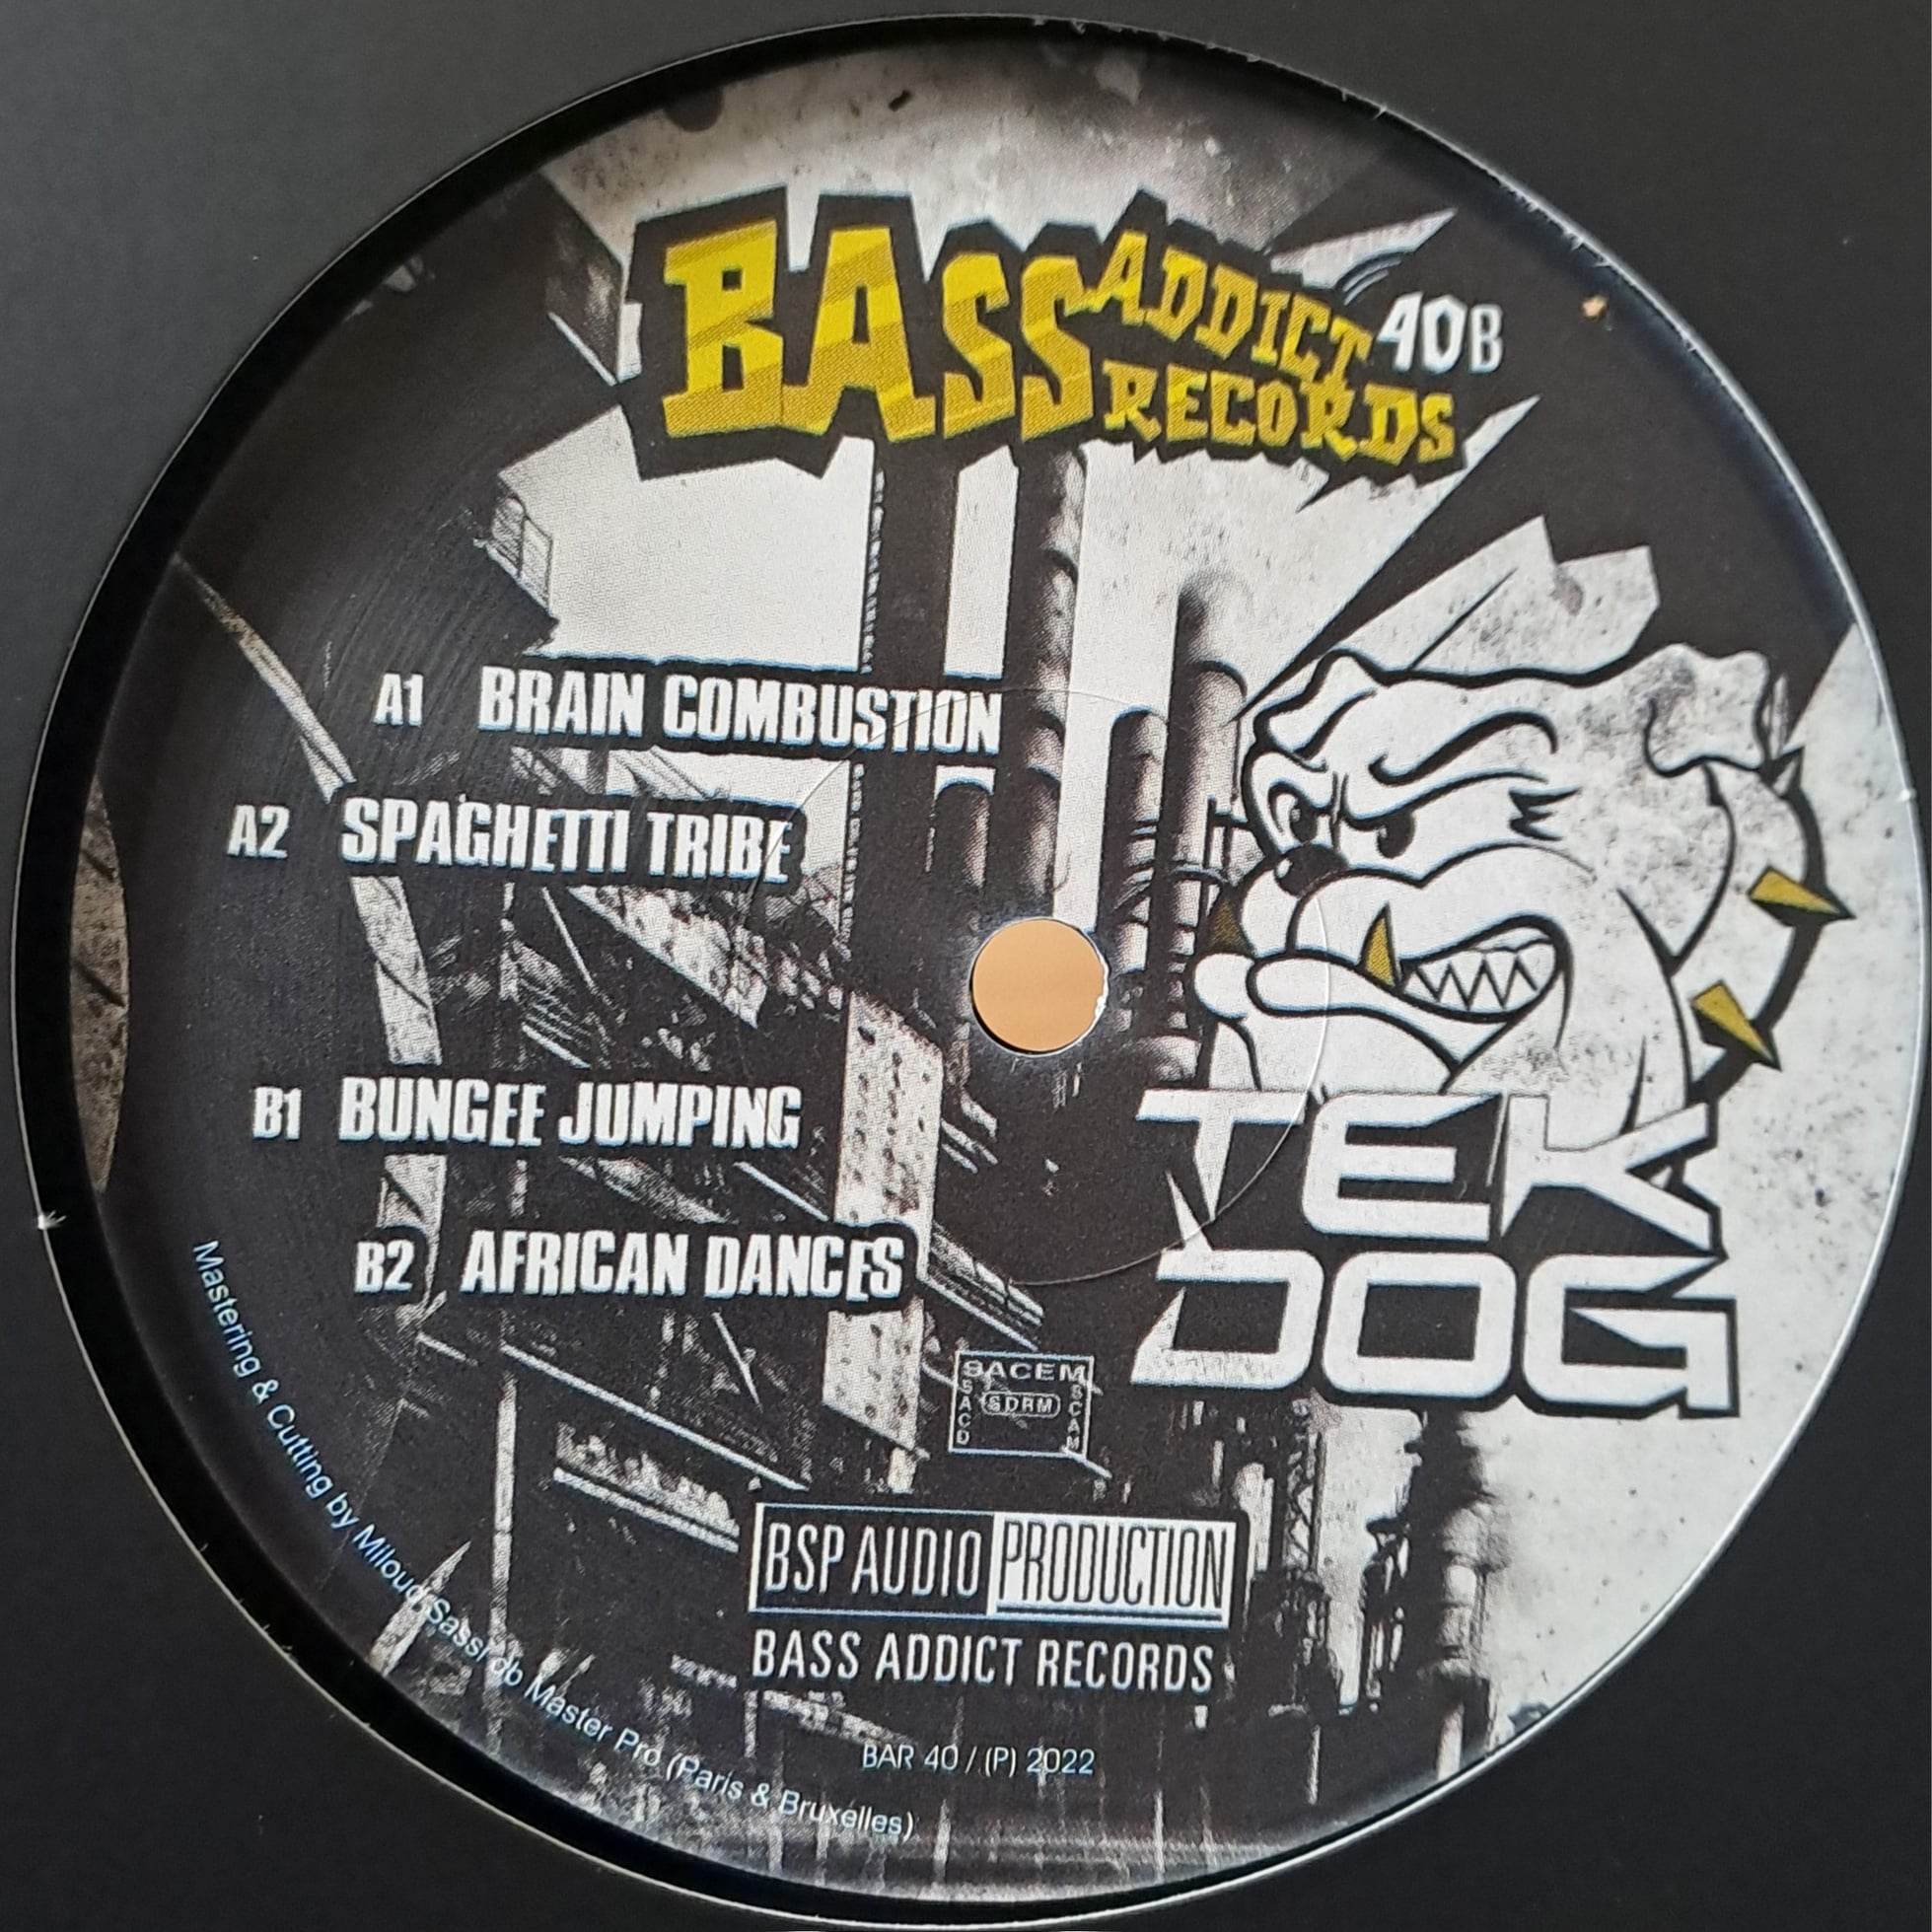 Bass Addict 40 (toute dernière copie en stock) - vinyle freetekno